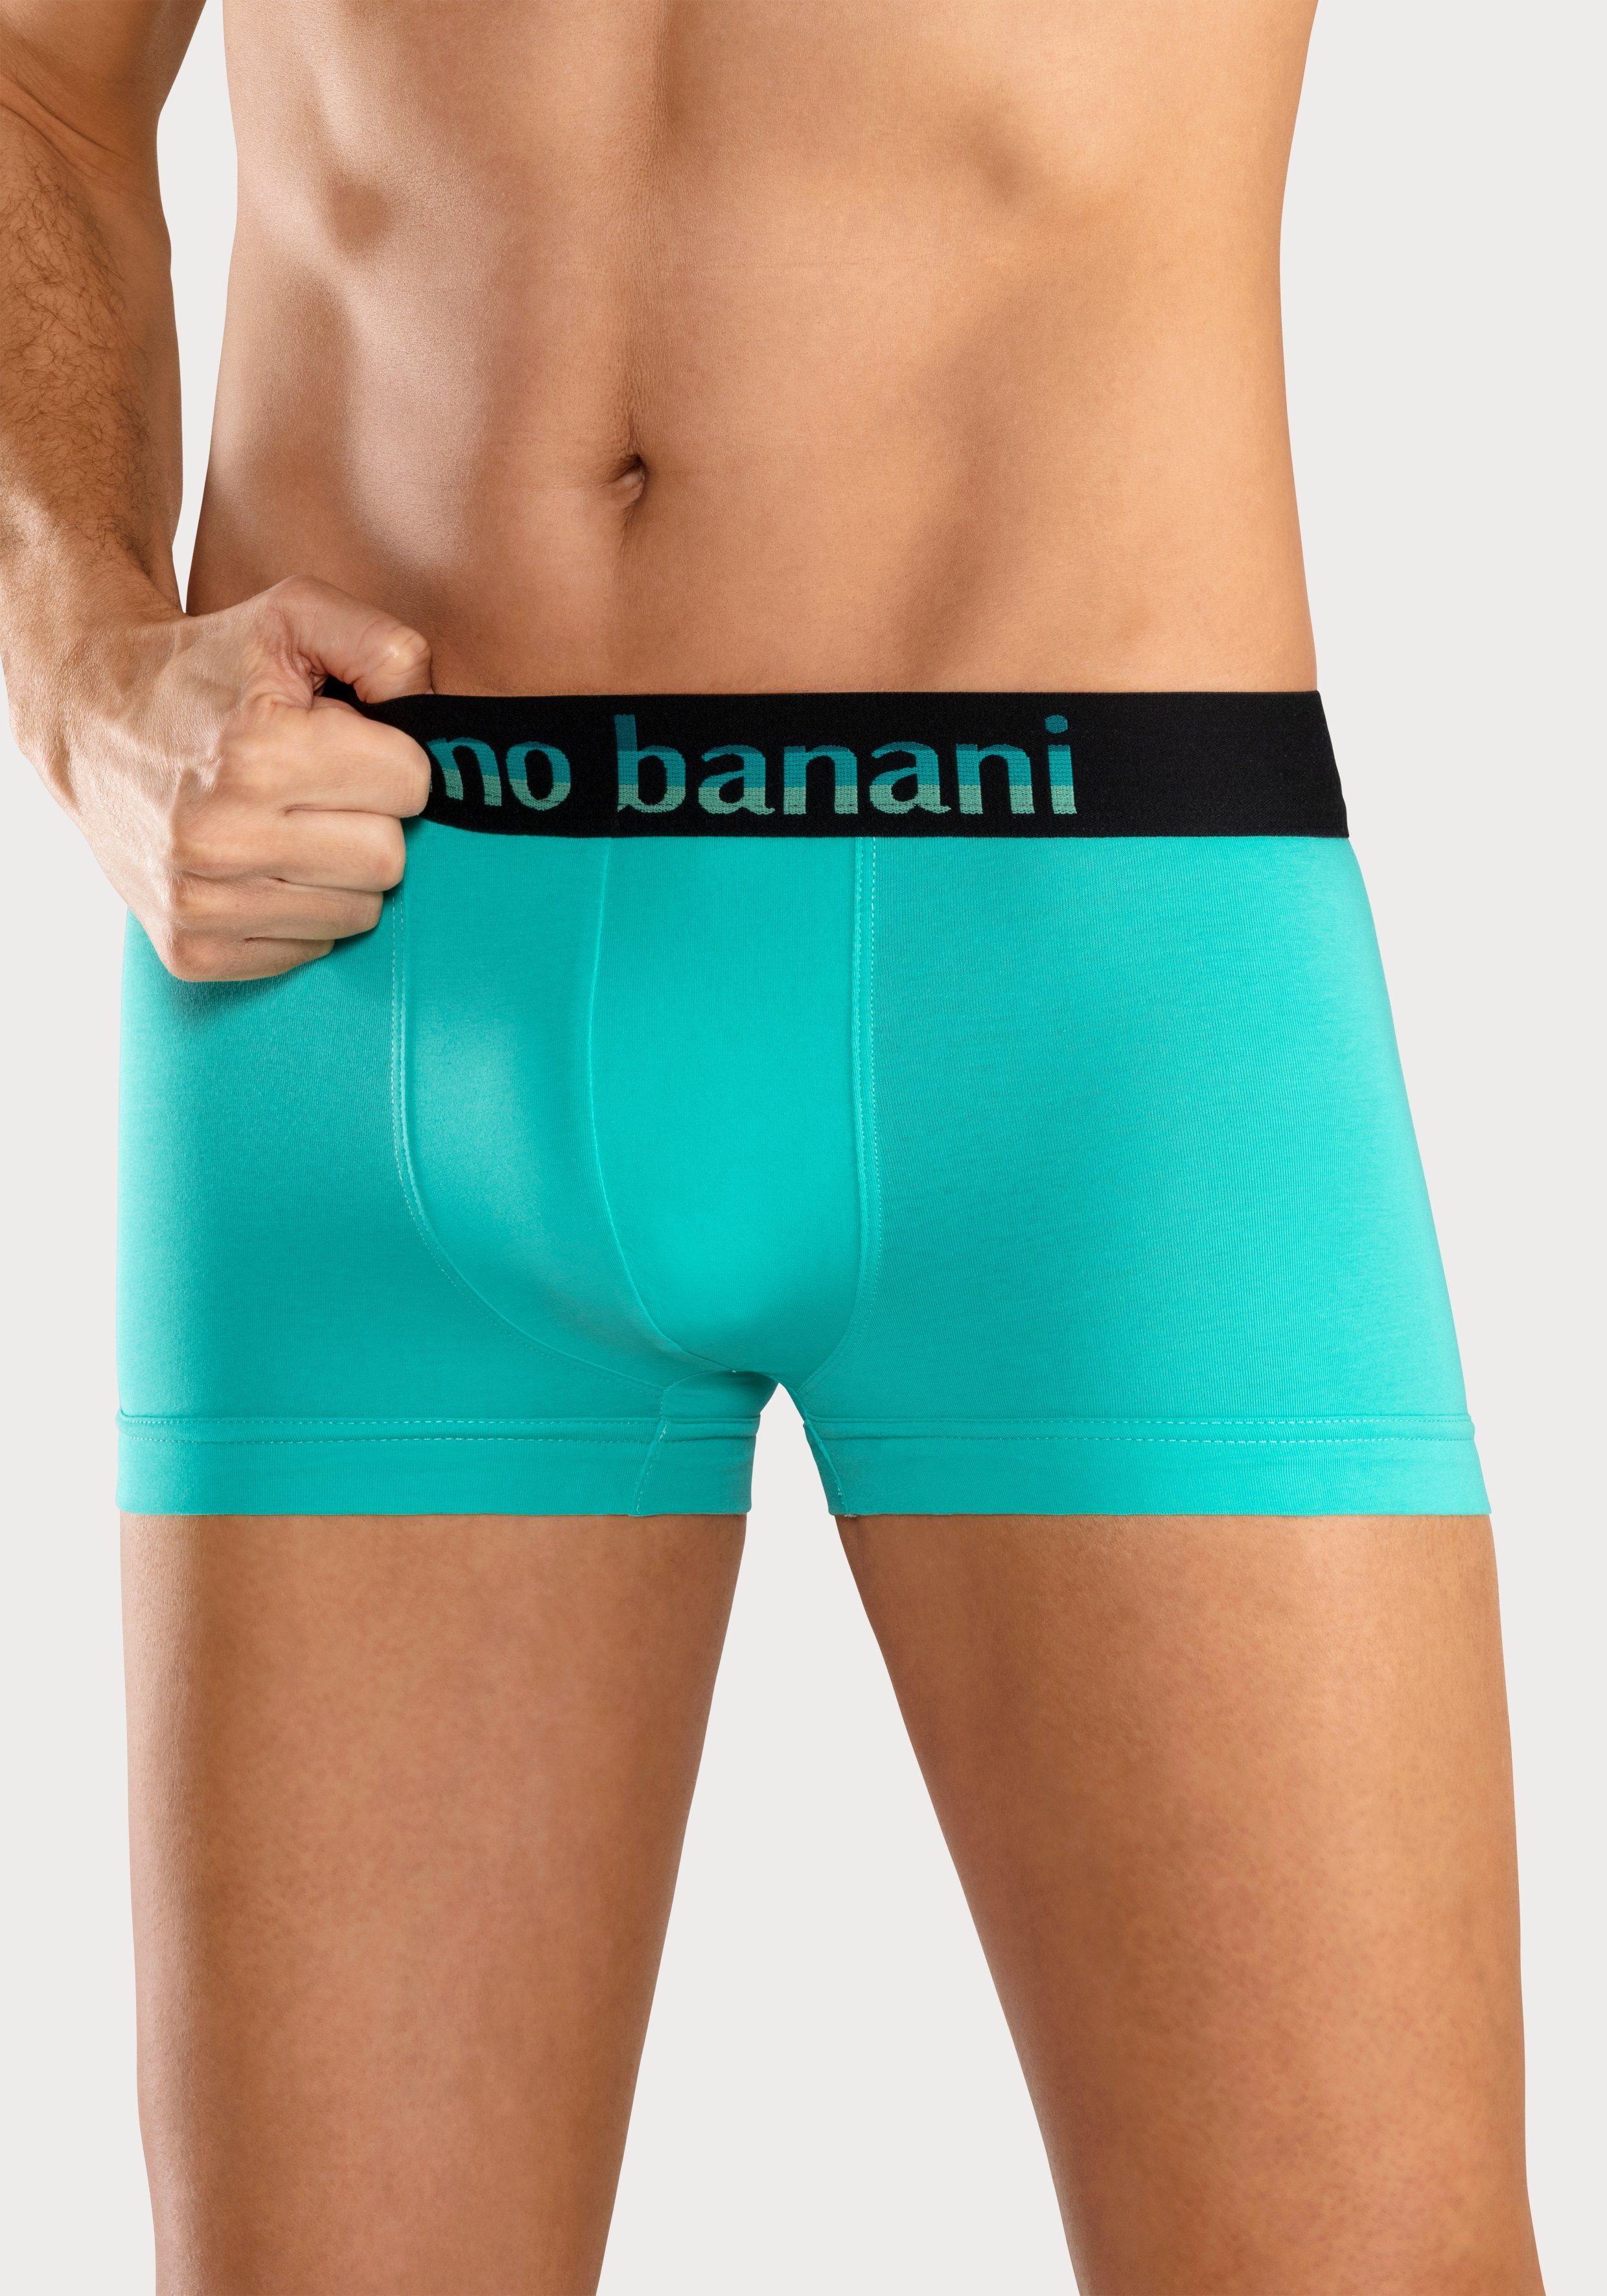 Bruno Banani Boxer (Packung, pink, Logo gelb, mit blau, Streifen 5-St) Webbund schwarz mint